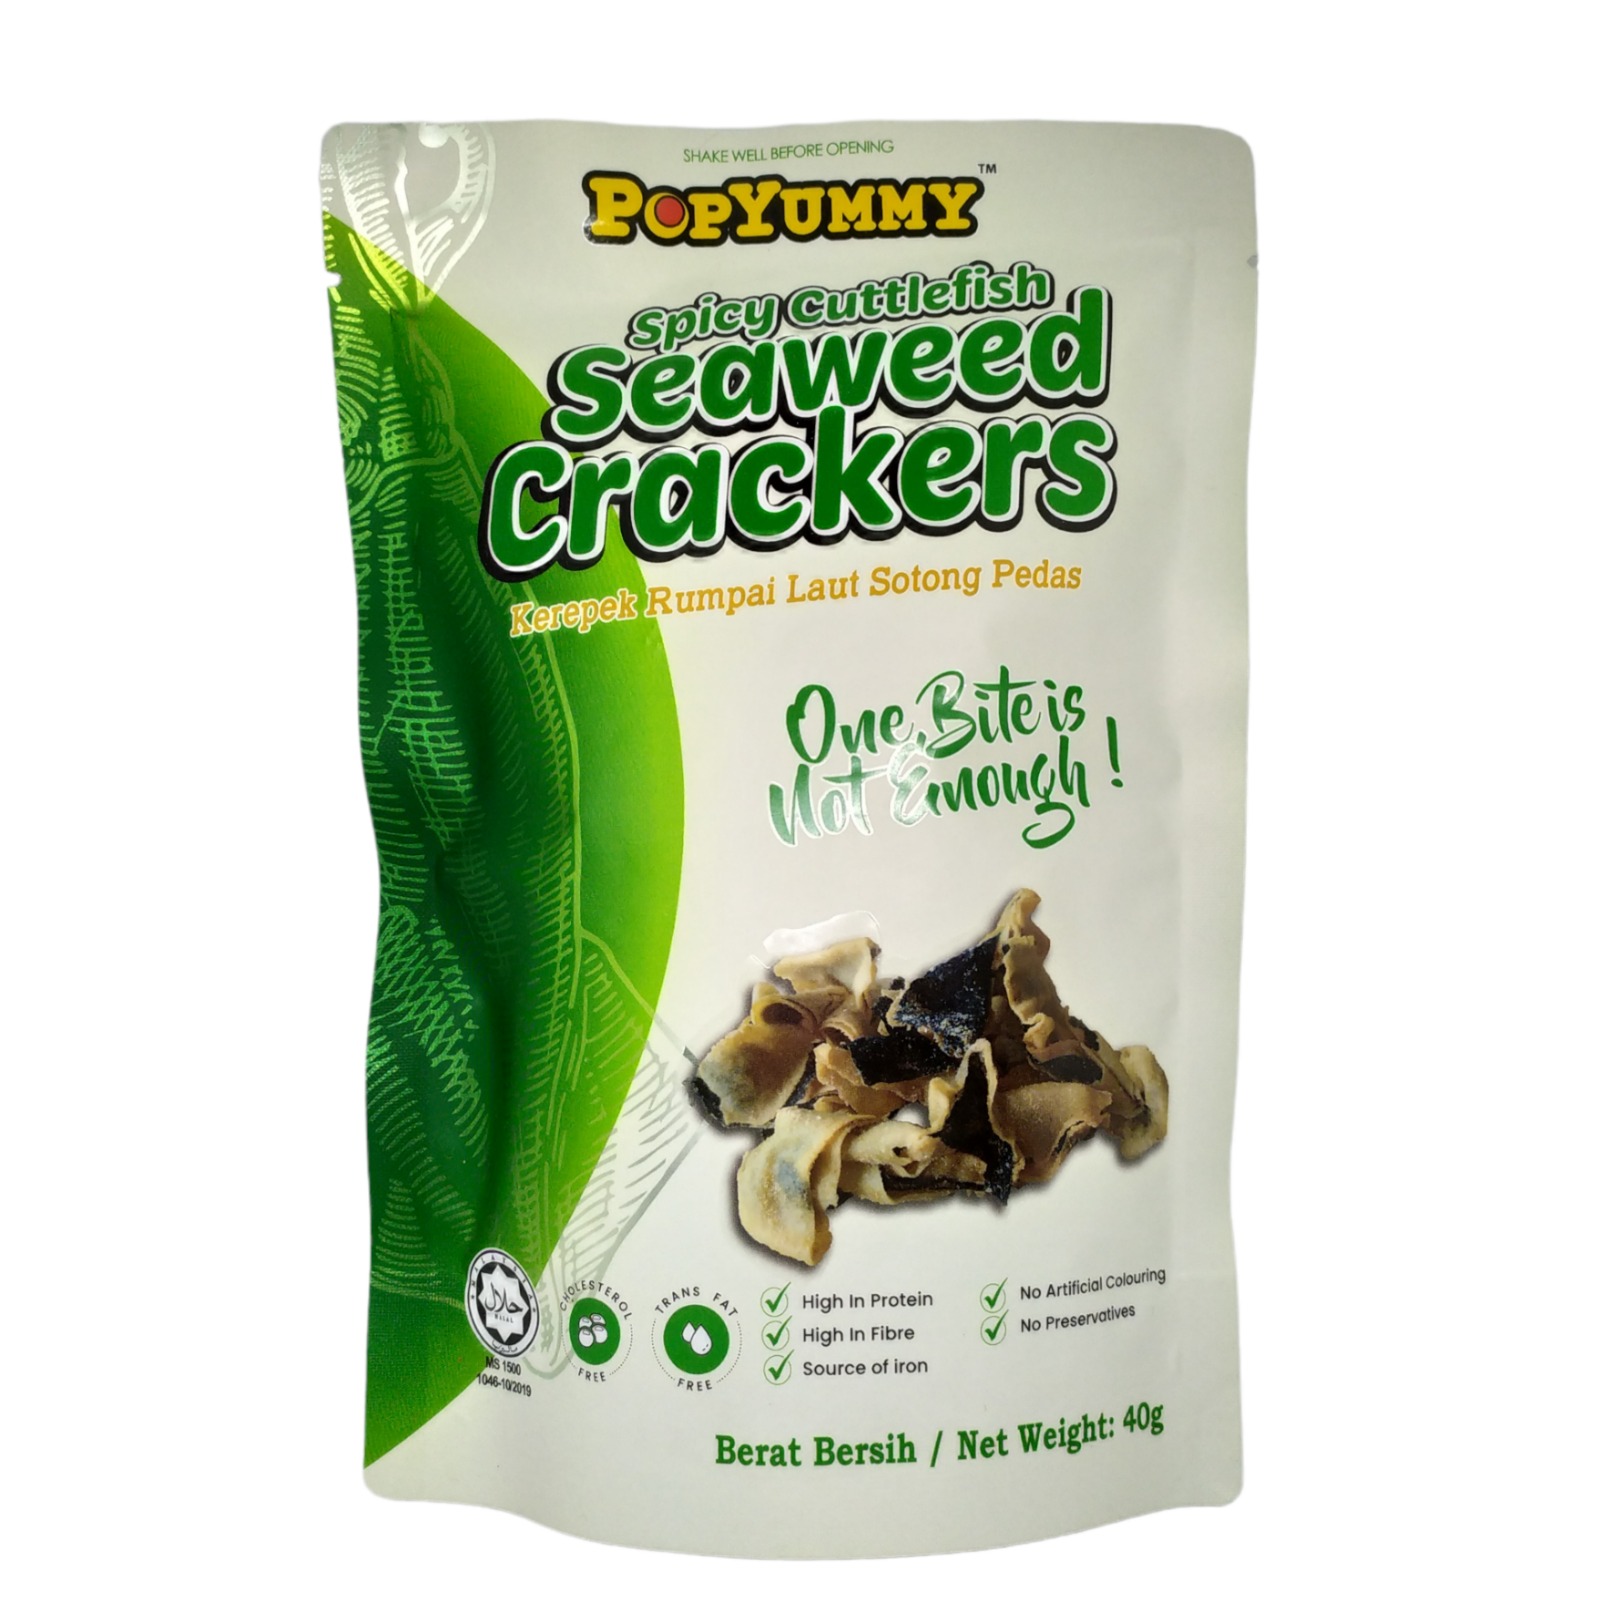 POPYUMMY Spicy Cuttlefish Seaweed Crackers (40g)